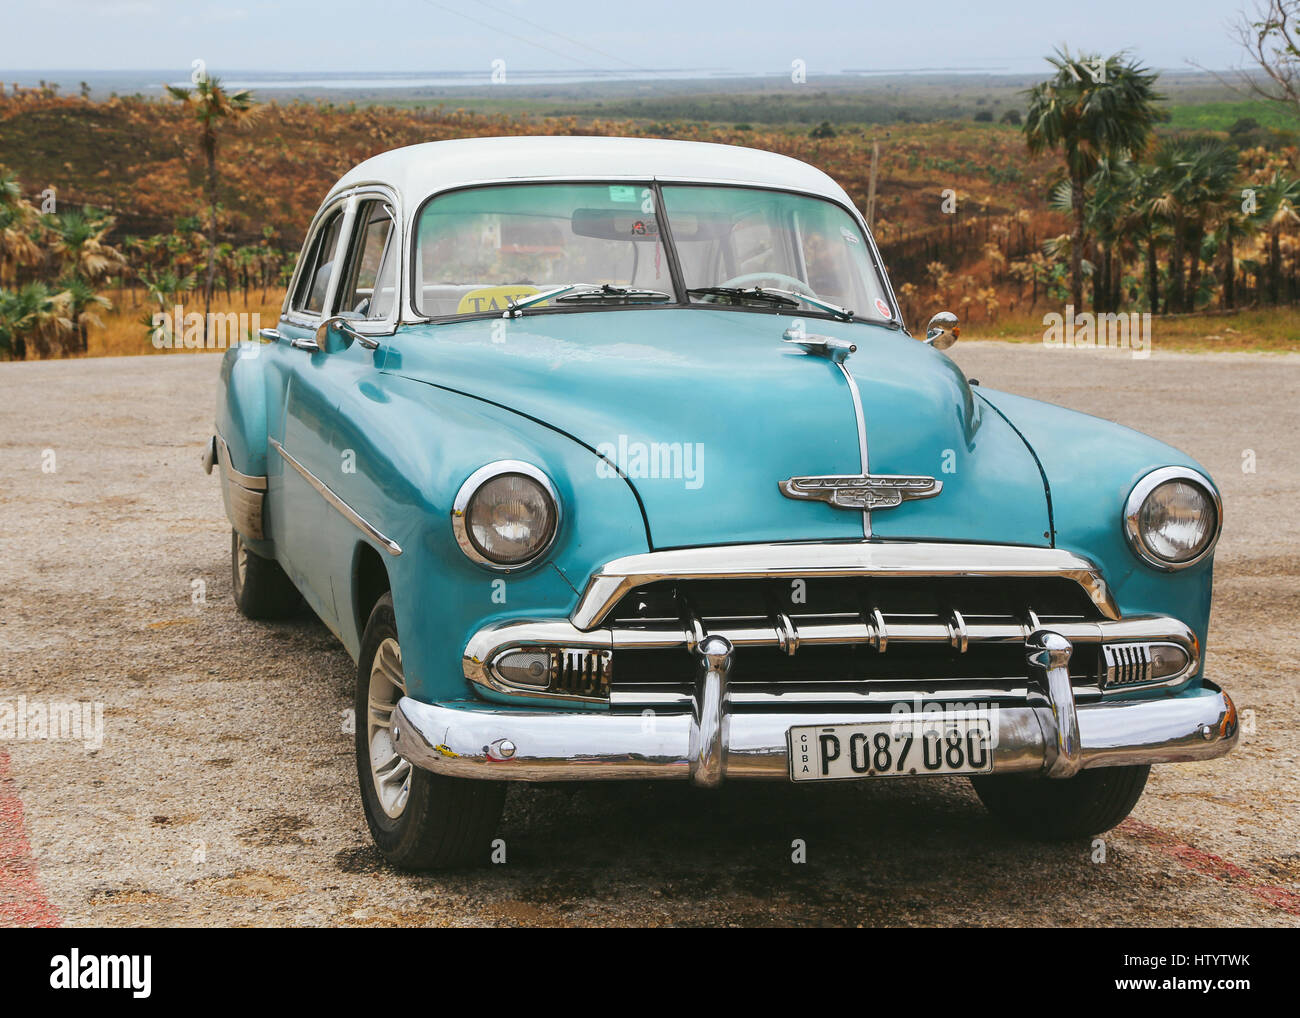 Un viejo taxi Chevrolet azul en un aparcamiento en las afueras de la ciudad de Trinidad, Cuba Foto de stock